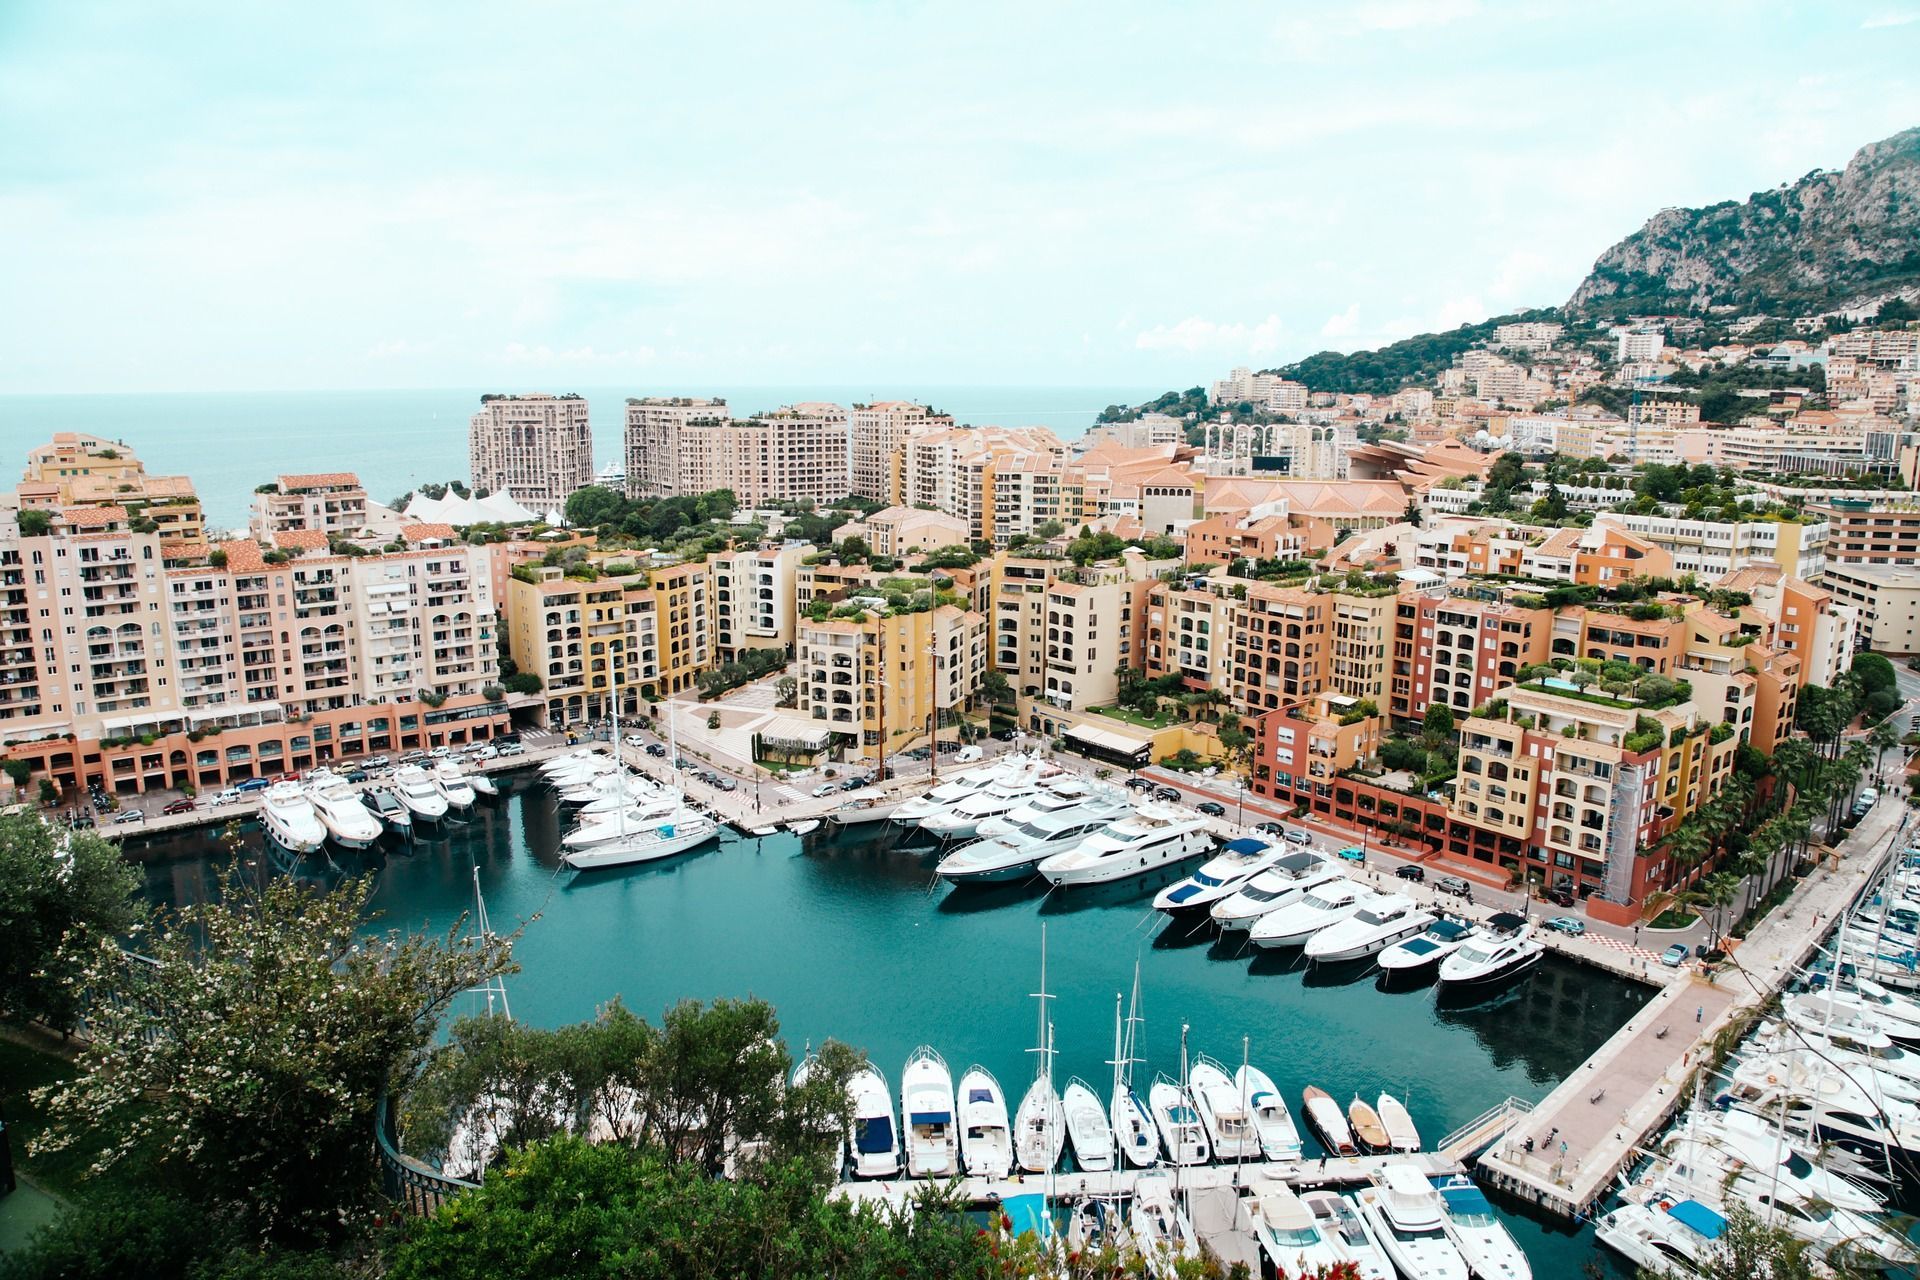  Самая дорогая недвижимость в мире 2020 в Монако - какие цены